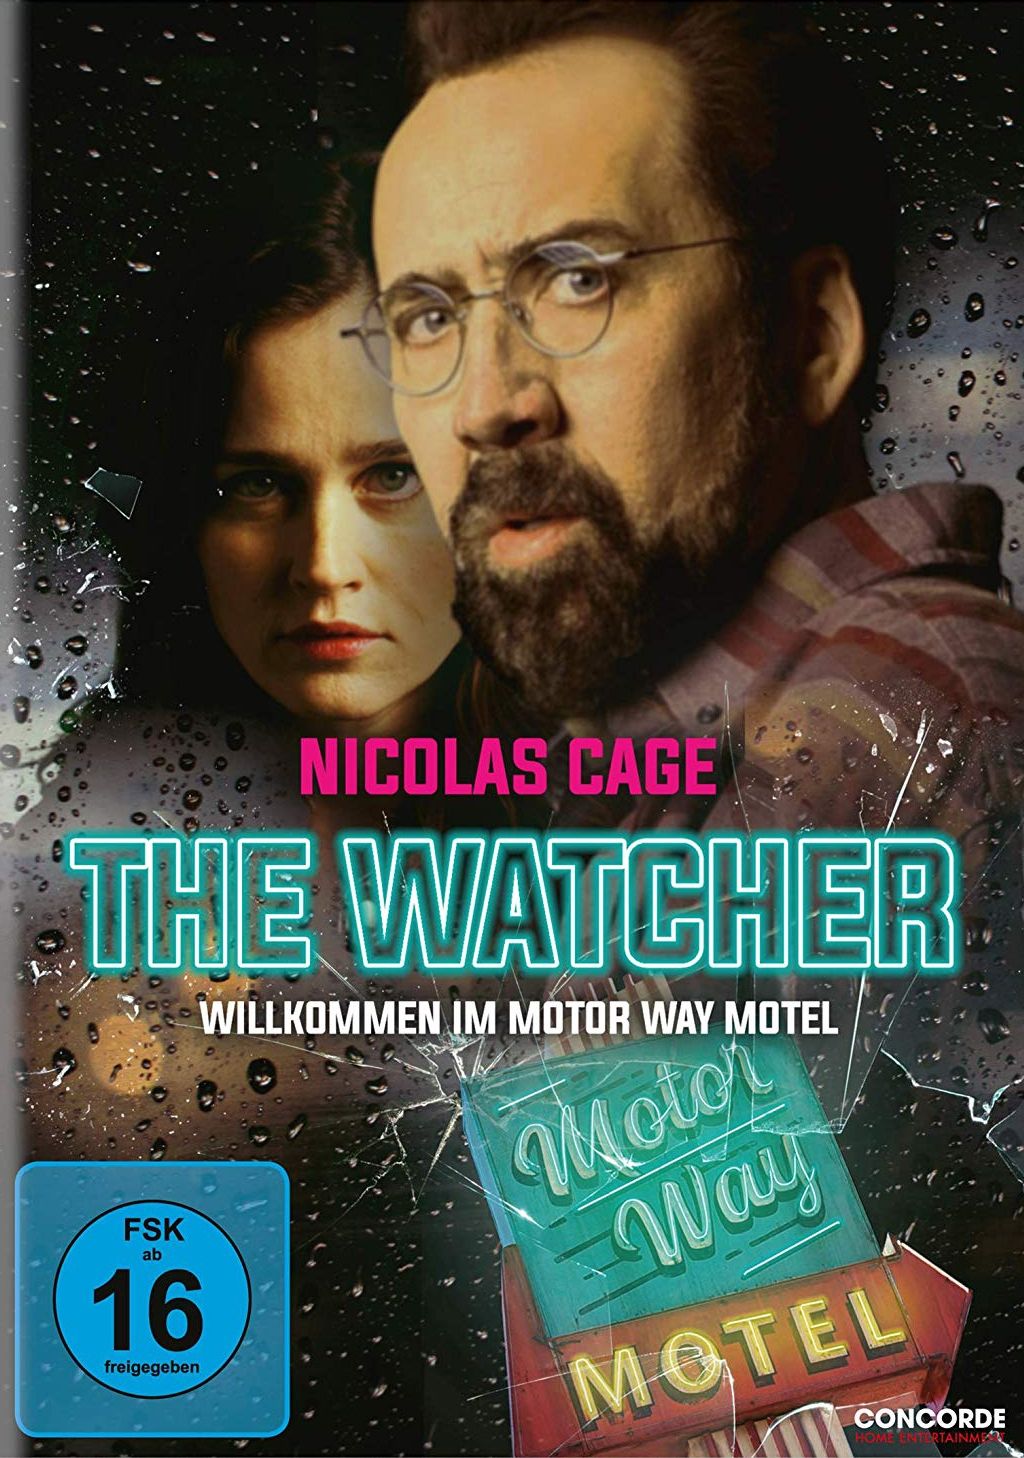 Watcher, The - Willkommen im Motor Way Motel